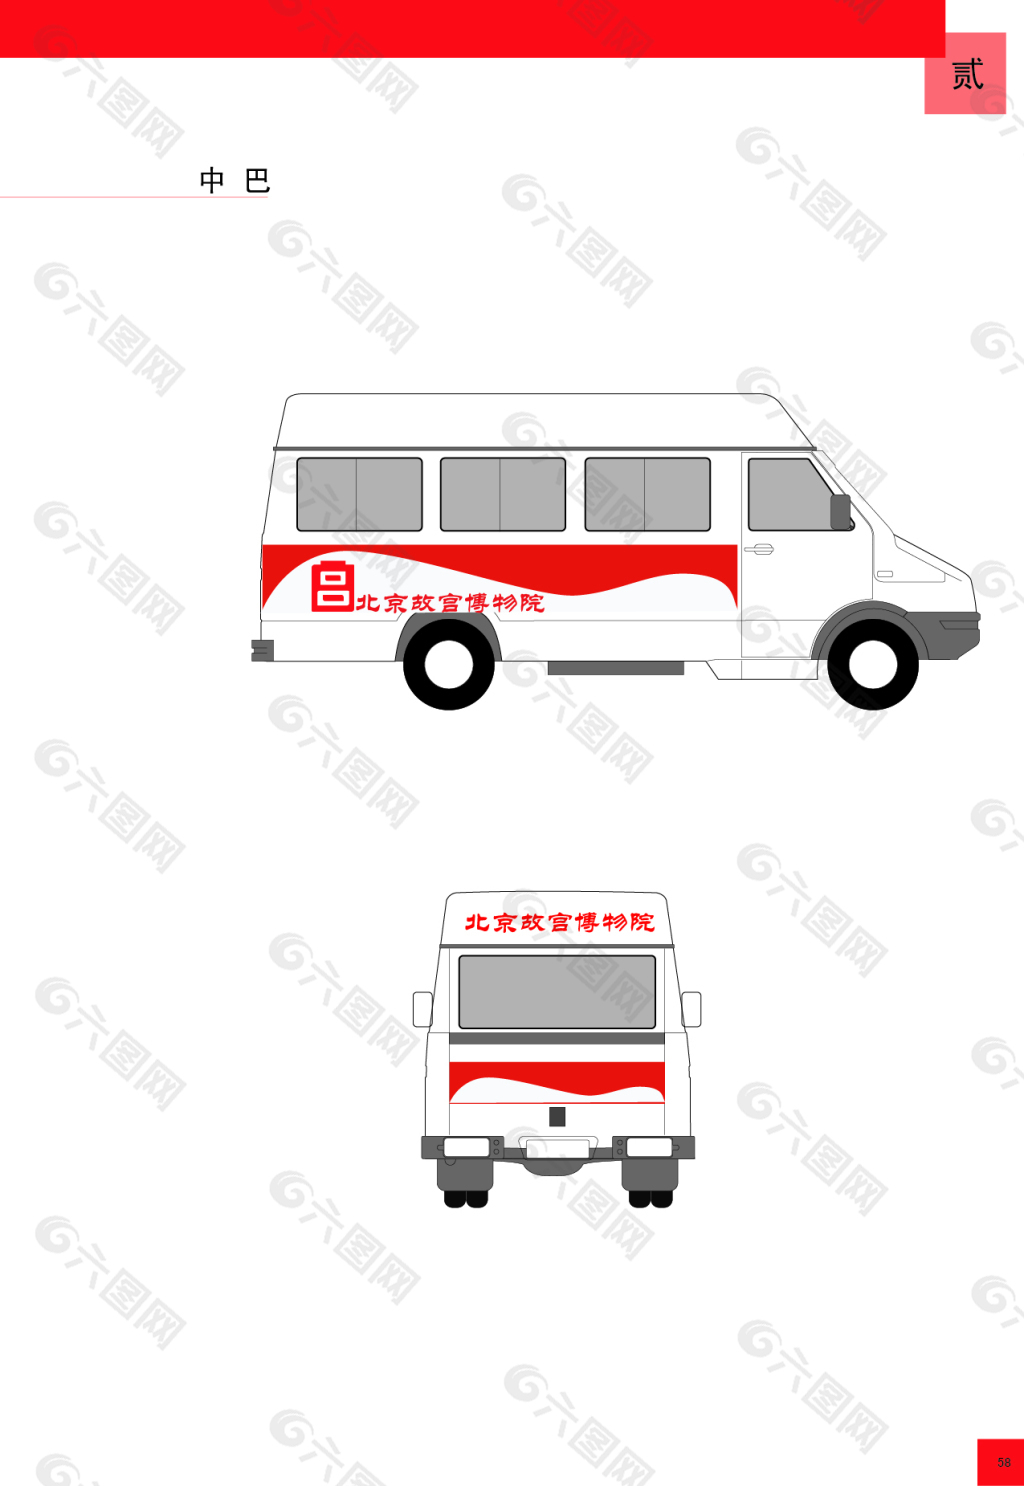 中巴巴士模型